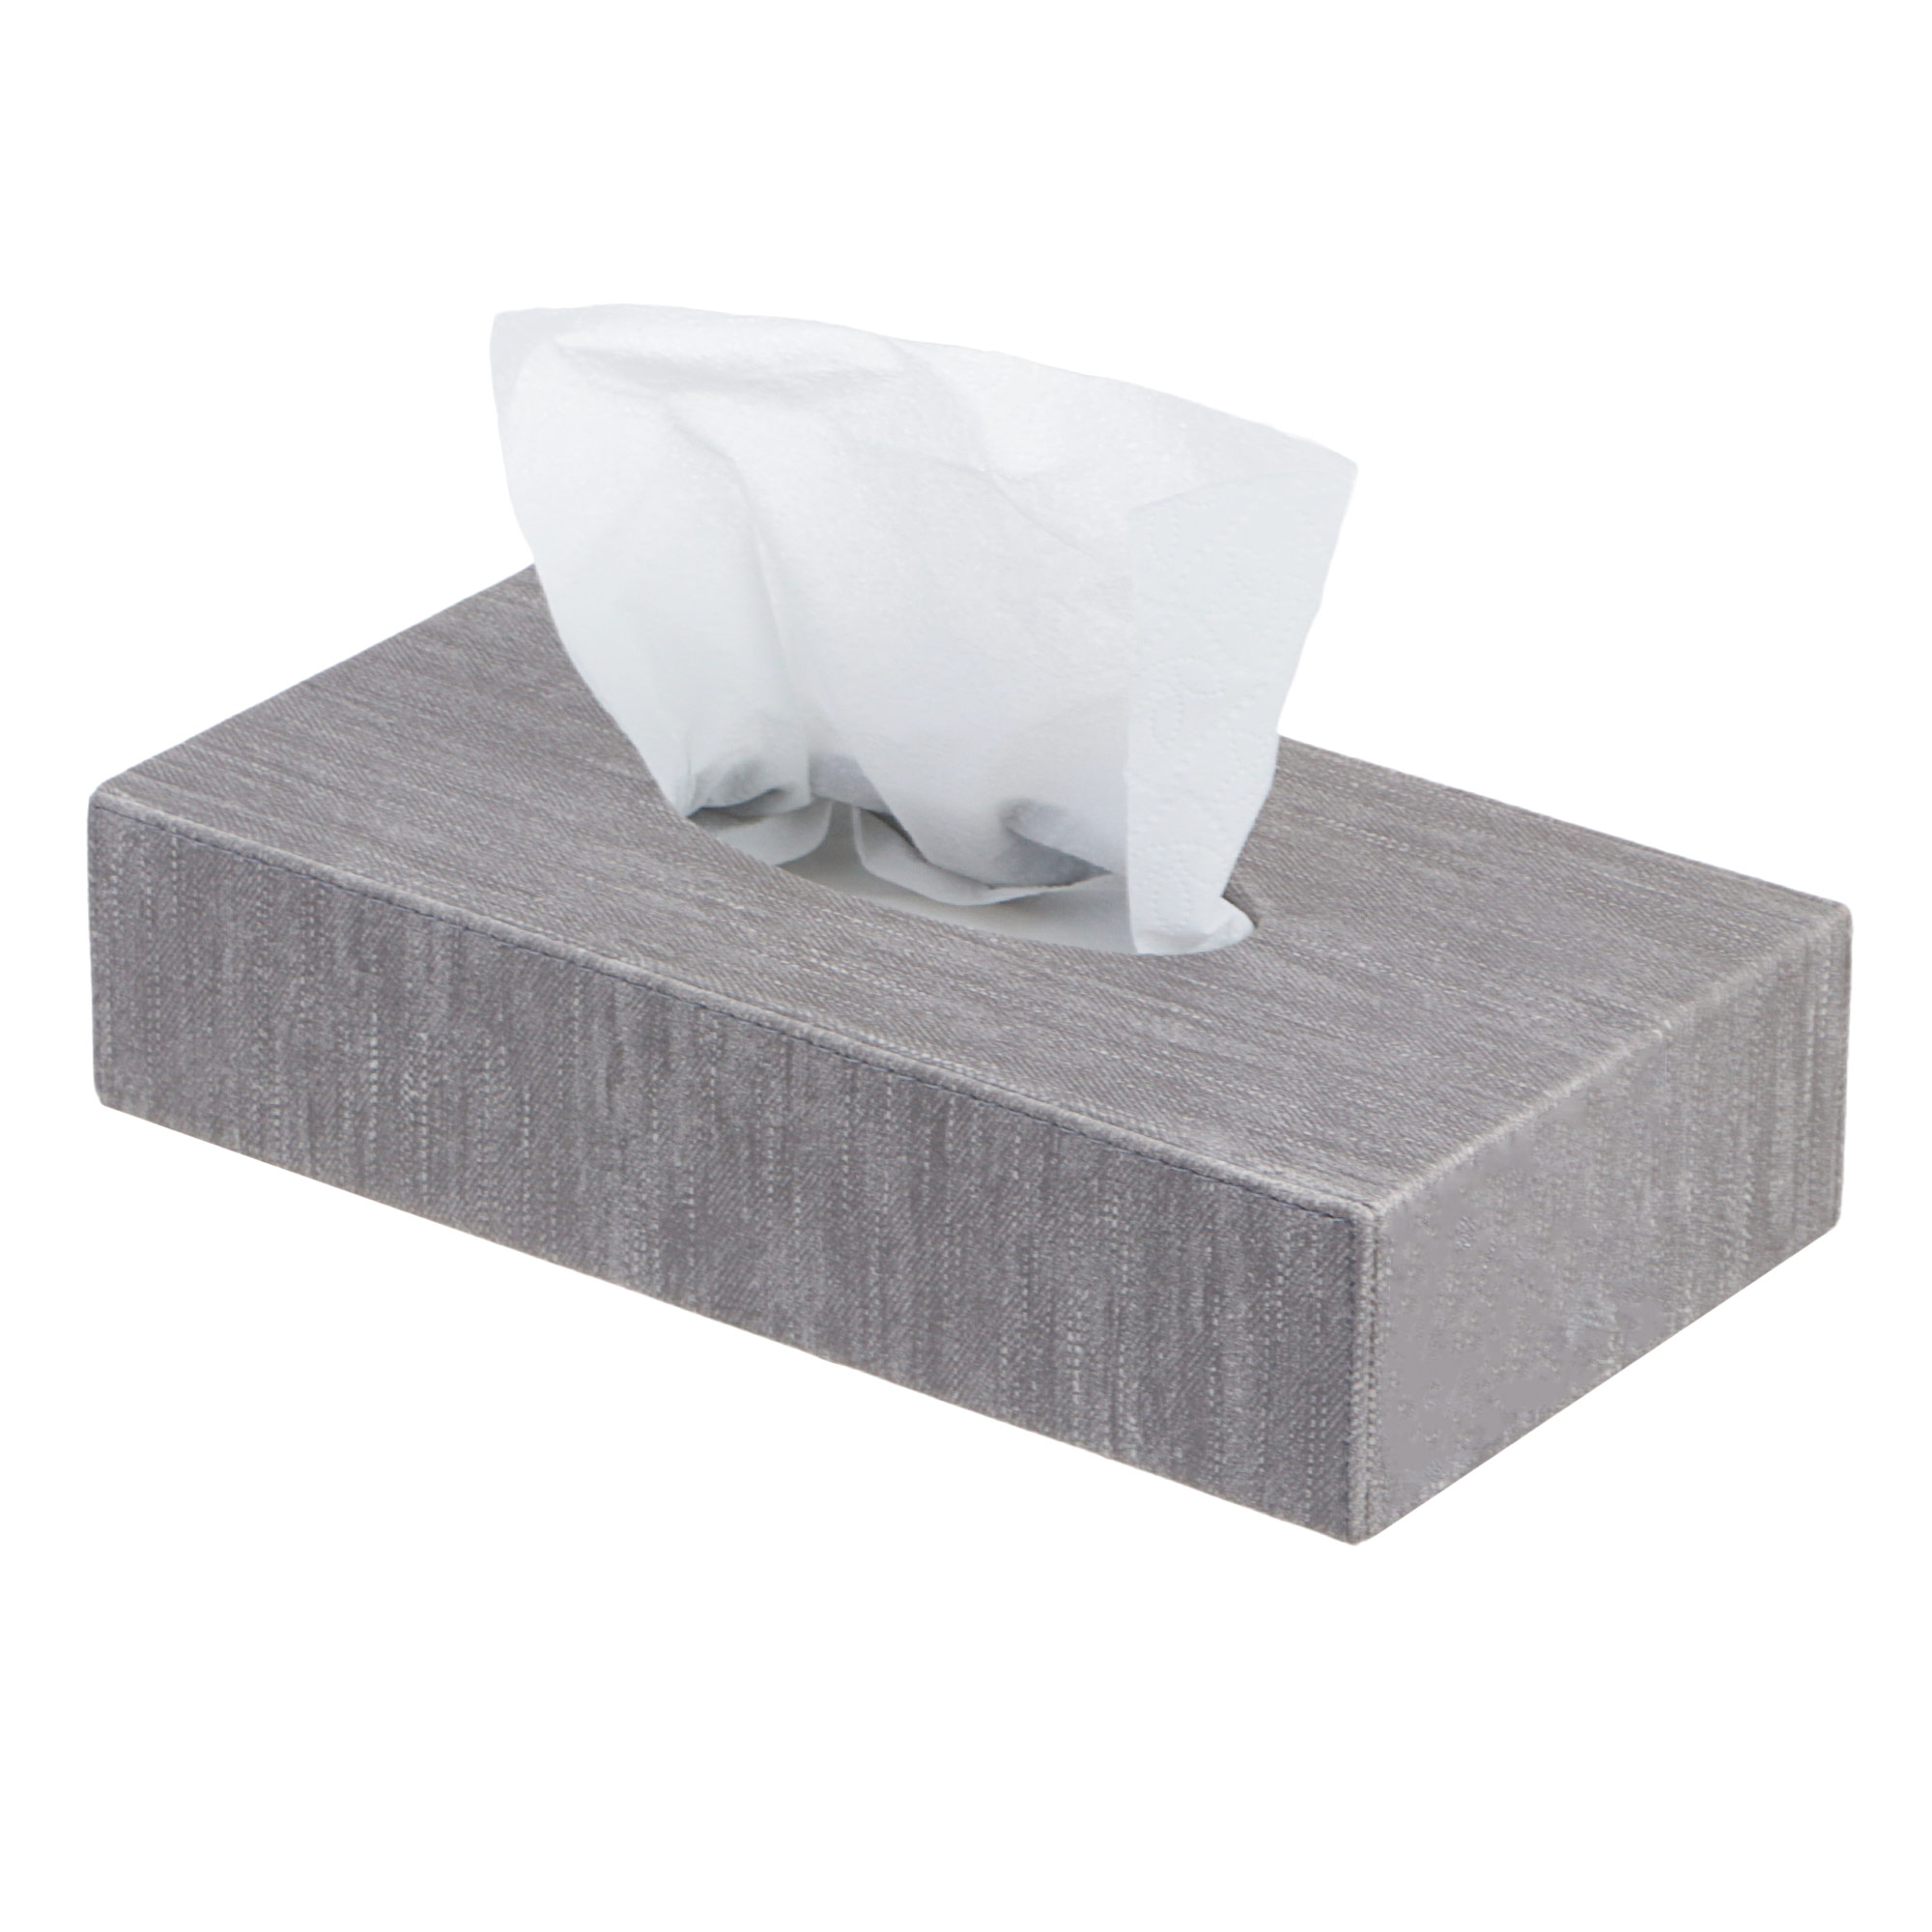 Коробка для салфеток прямоугольная Togas Грейс серый 23,5x13,5x5,5 коробка для салфеток квадратная togas кинт серый